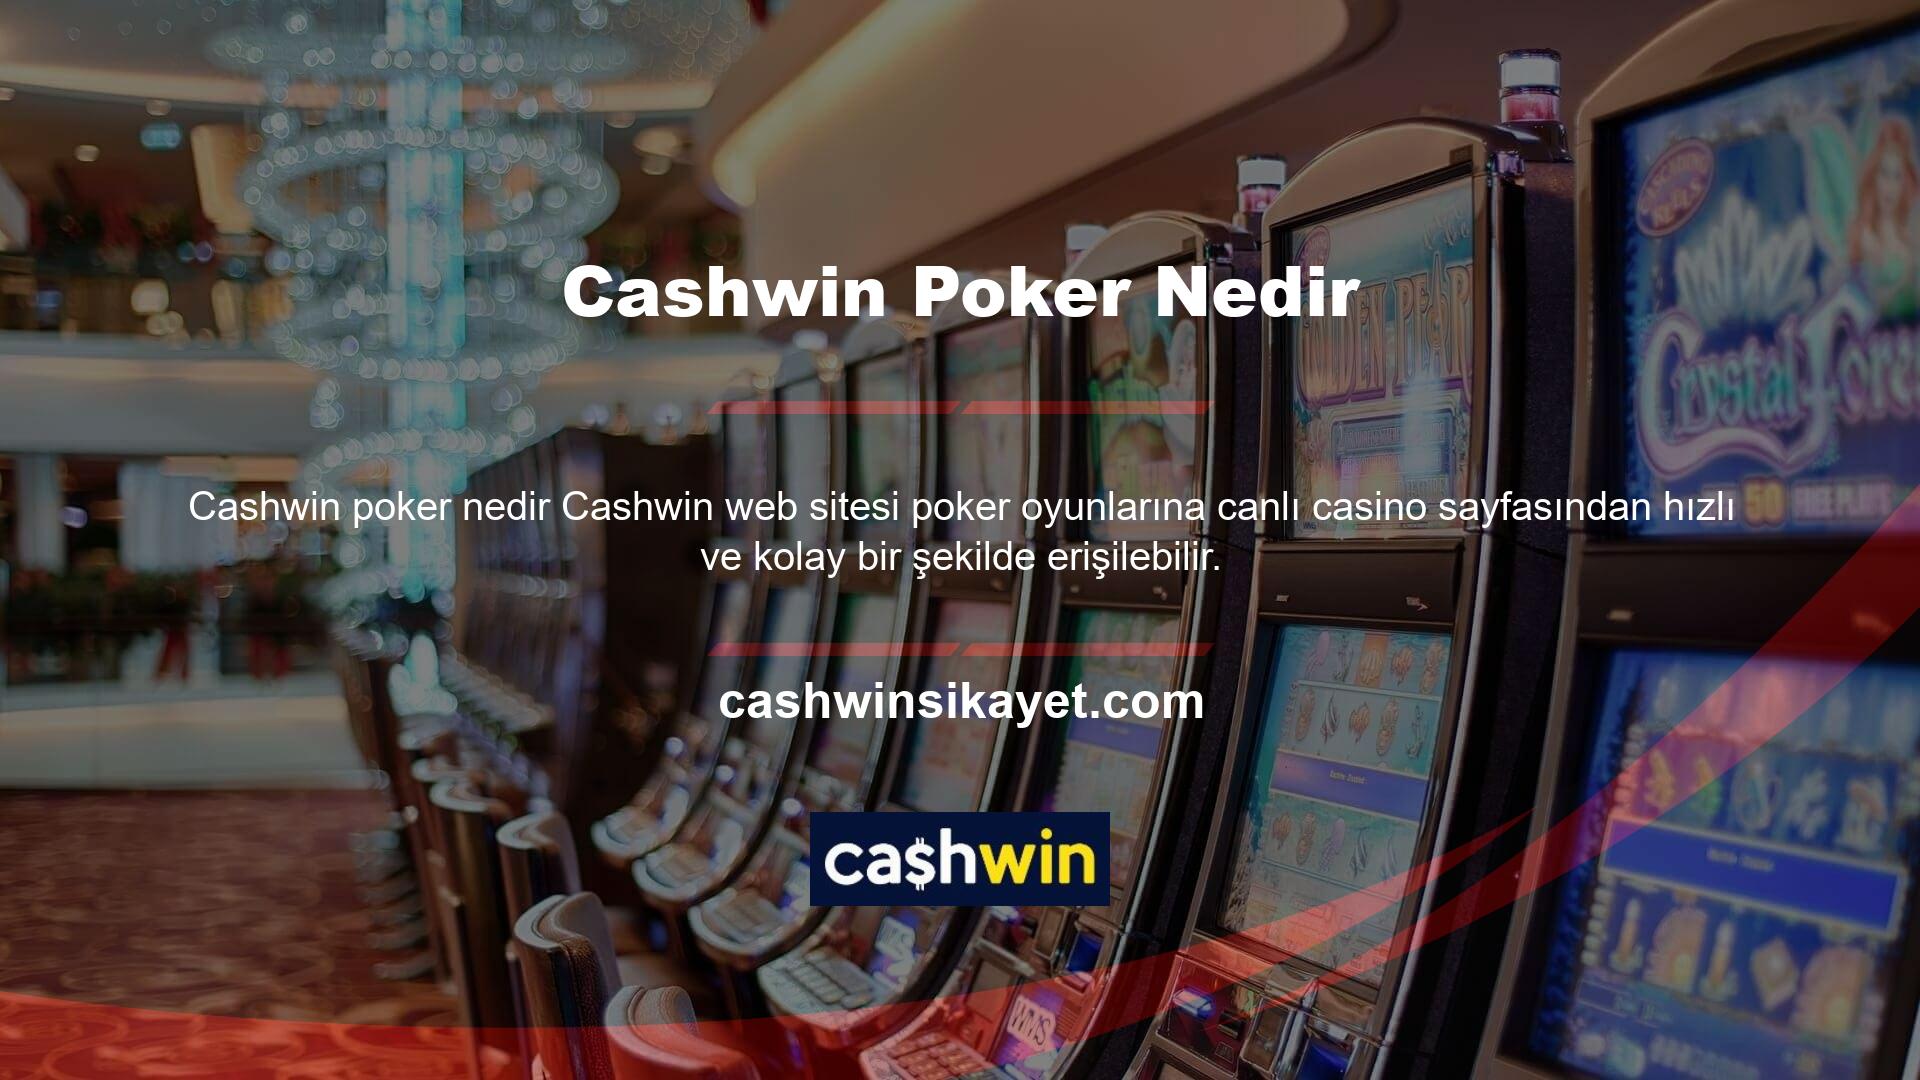 Poker, Cashwin web sitesindeki en popüler oyun seçeneklerinden biridir